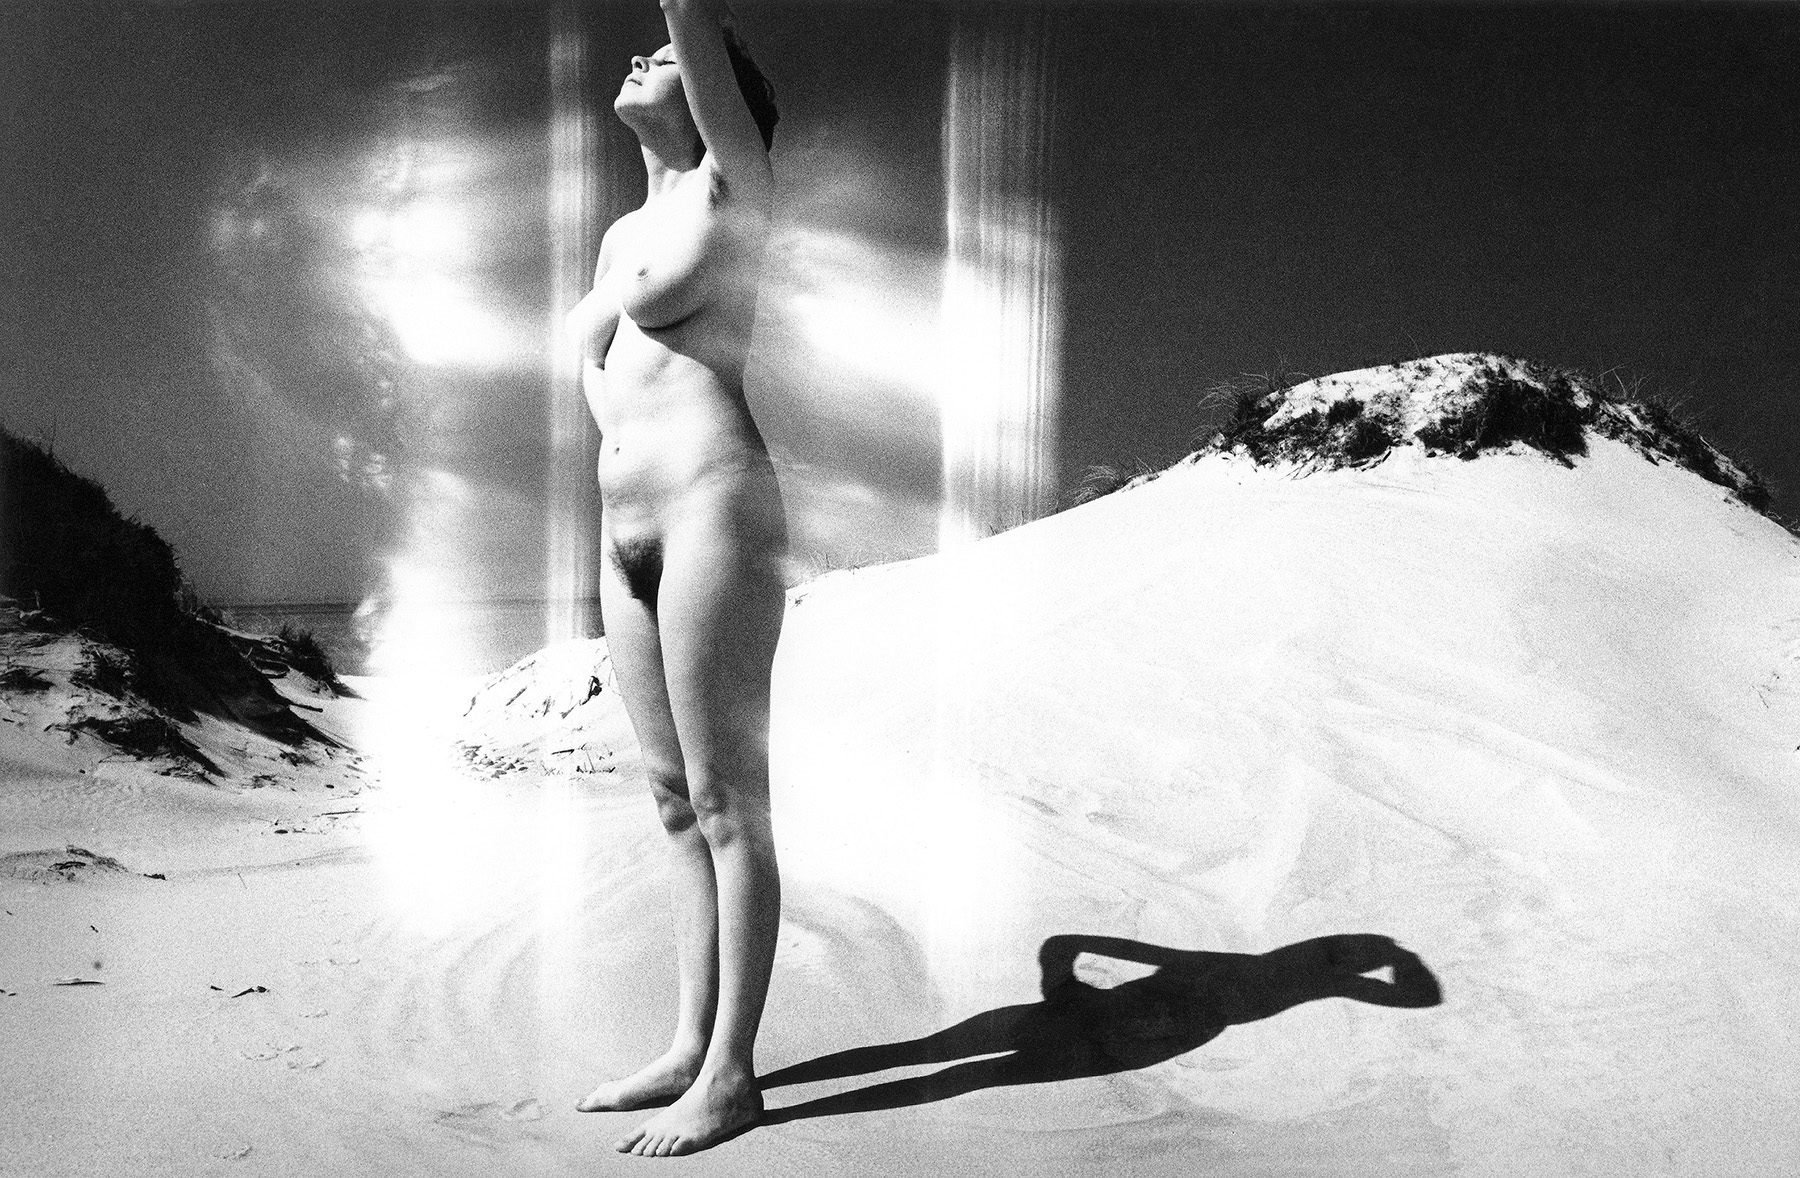 Виргилиус Шонта5. Женщина возле моря. 1980. Предоставлено семьей фотографа и Р. Пожерскисом